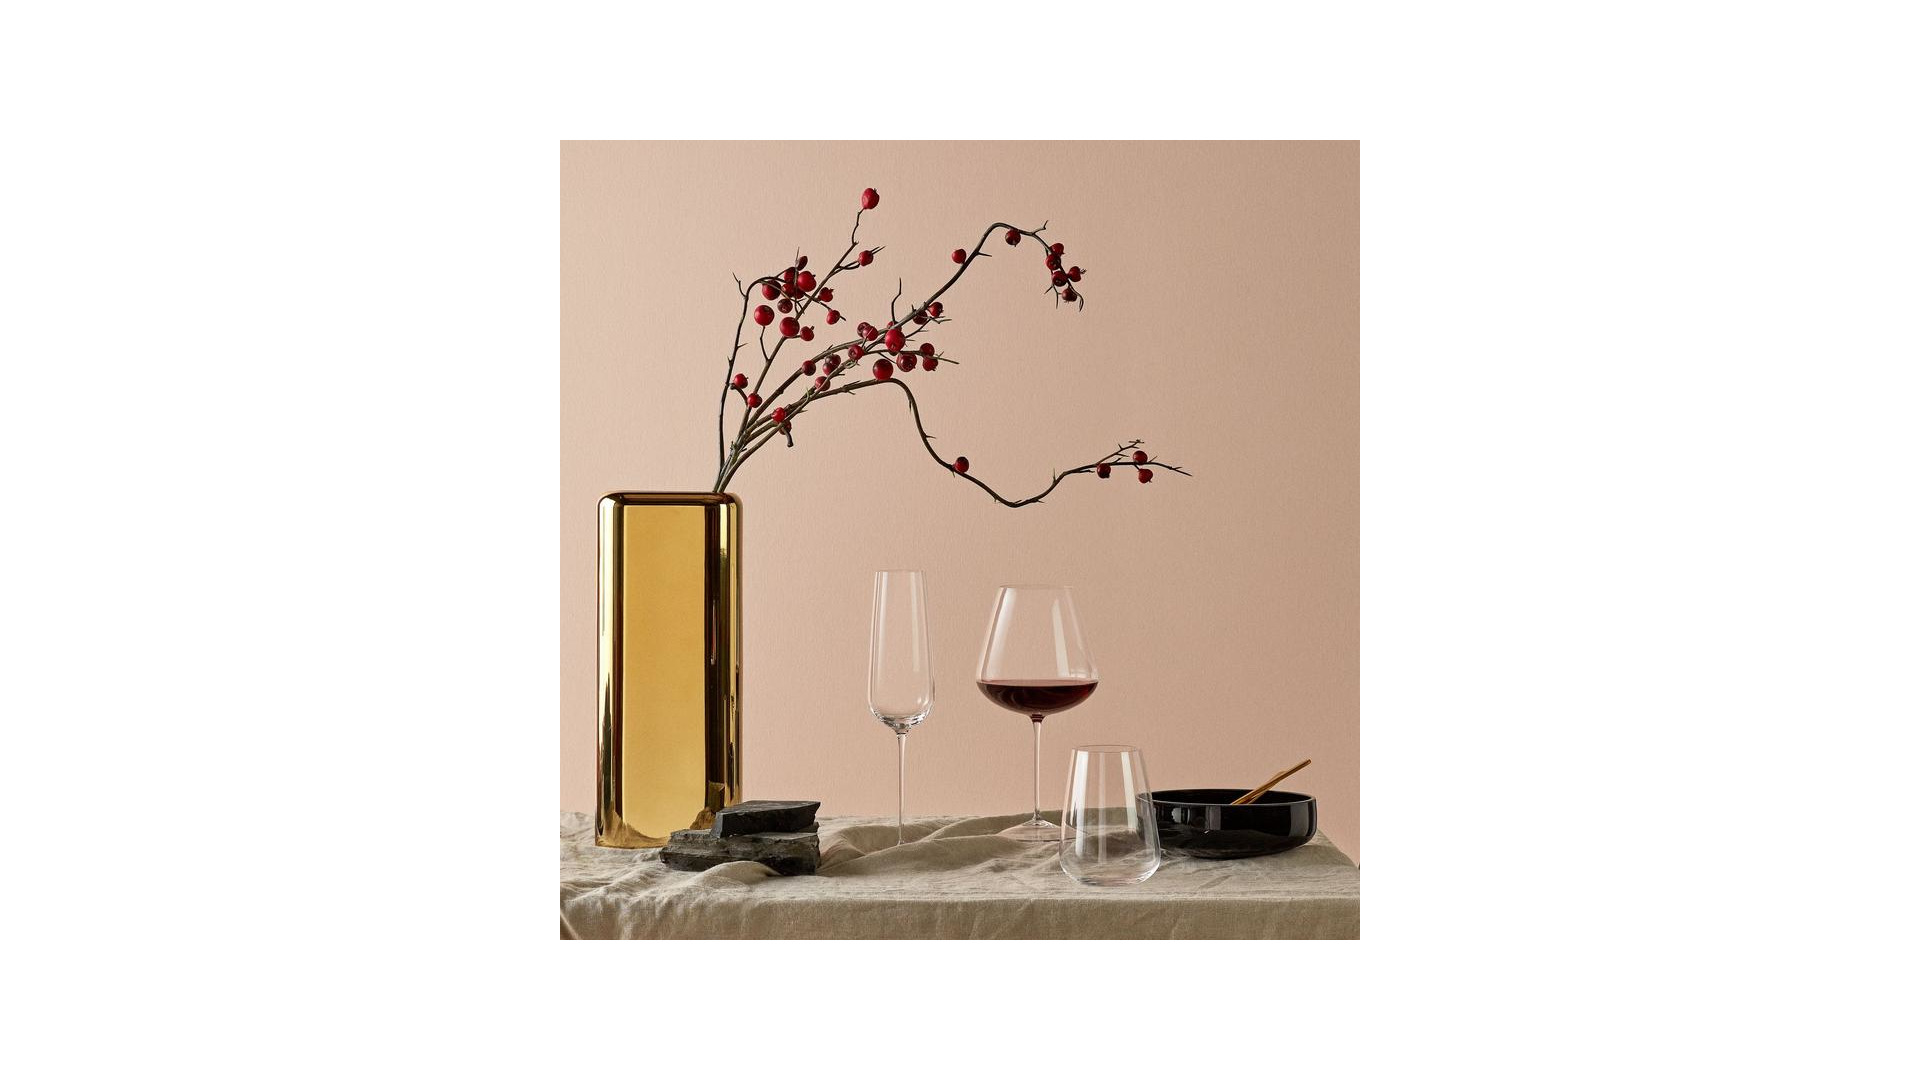 Бокал для красного вина Nude Glass Невидимая ножка Вертиго 650 мл, стекло хрустальное